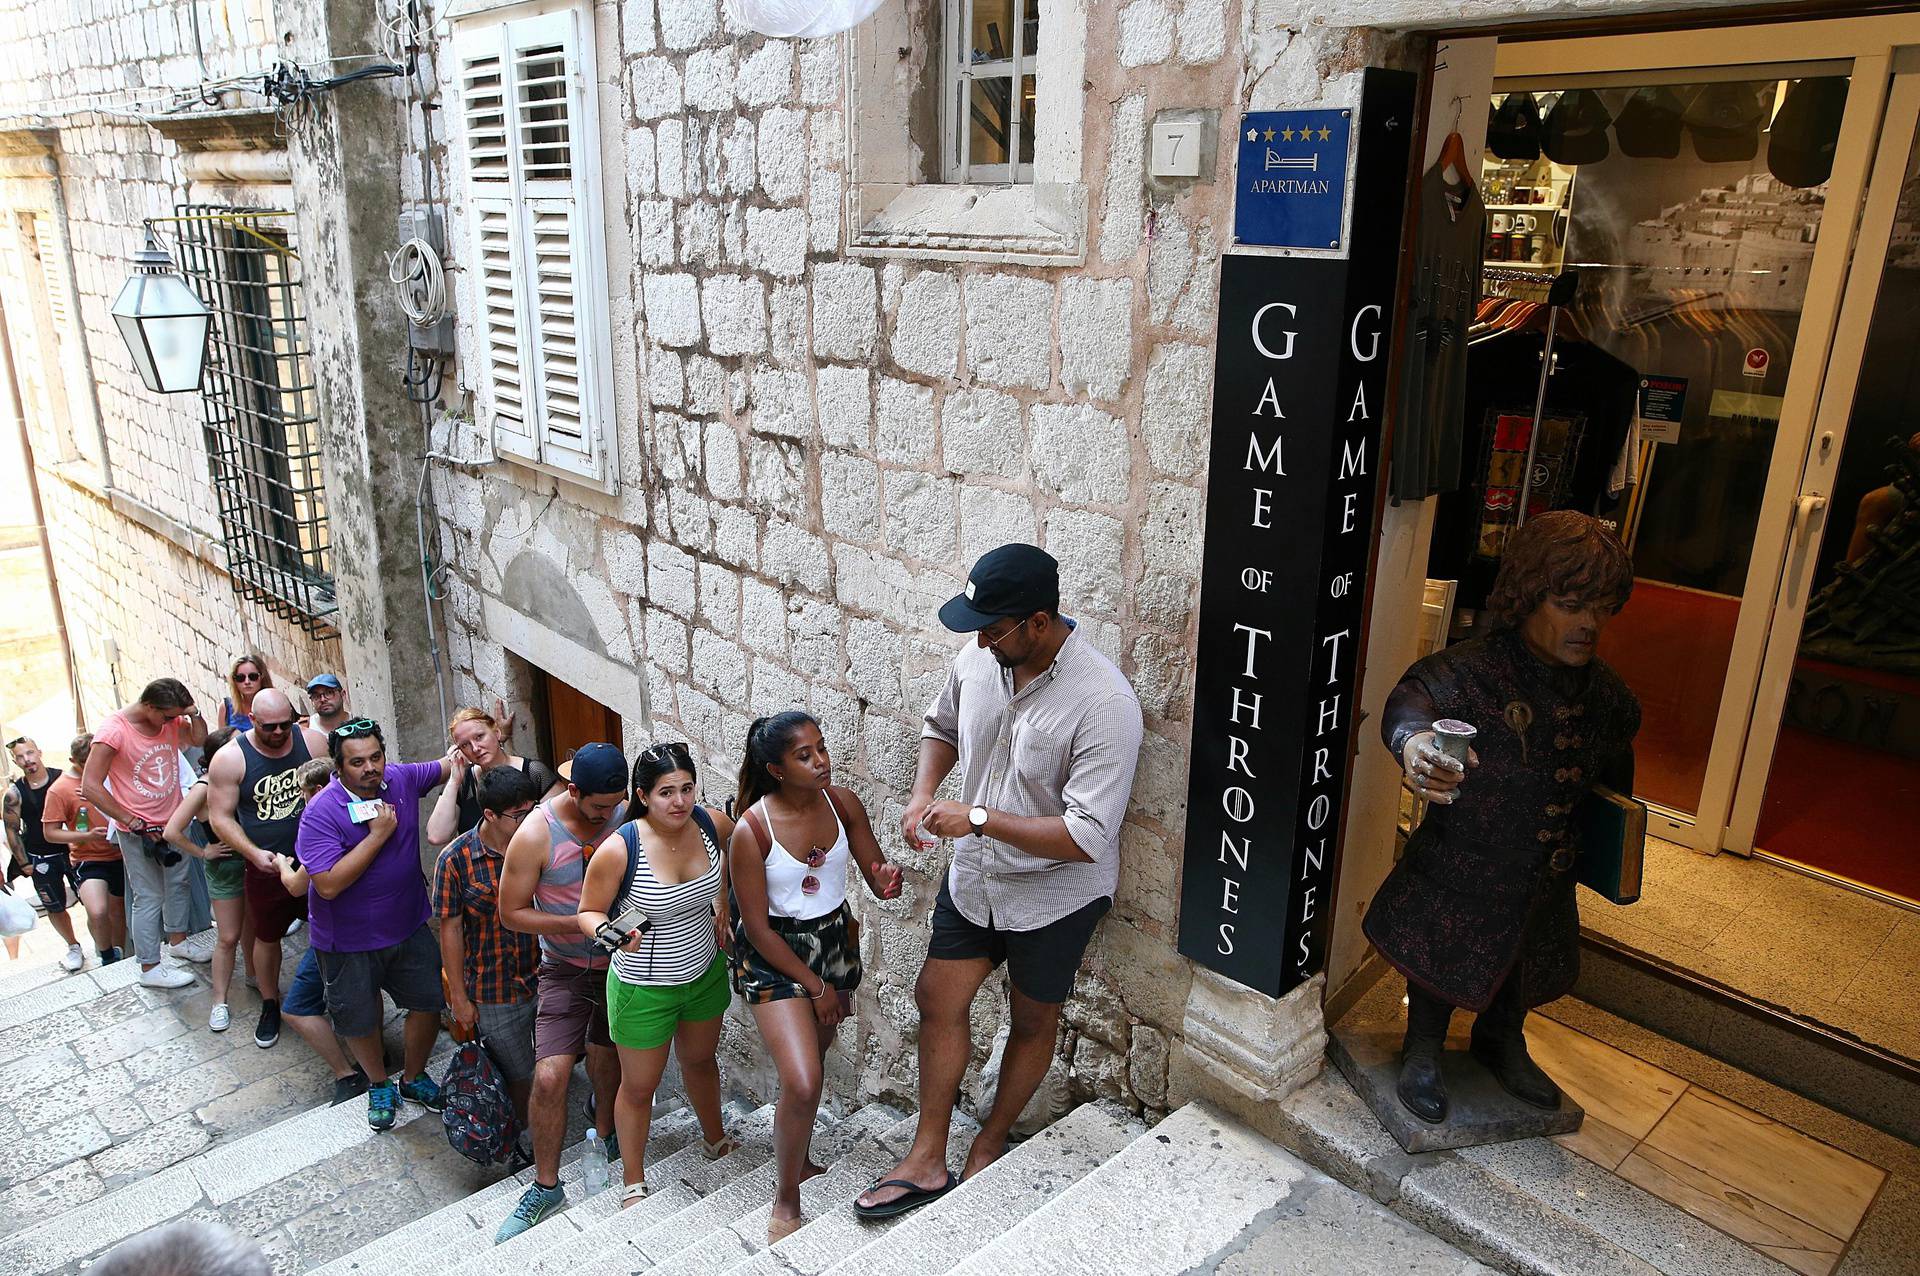 Hrvatskoj je turizam vezan uz seriju 'Igra prijestolja' donio prihod od 180 milijuna eura